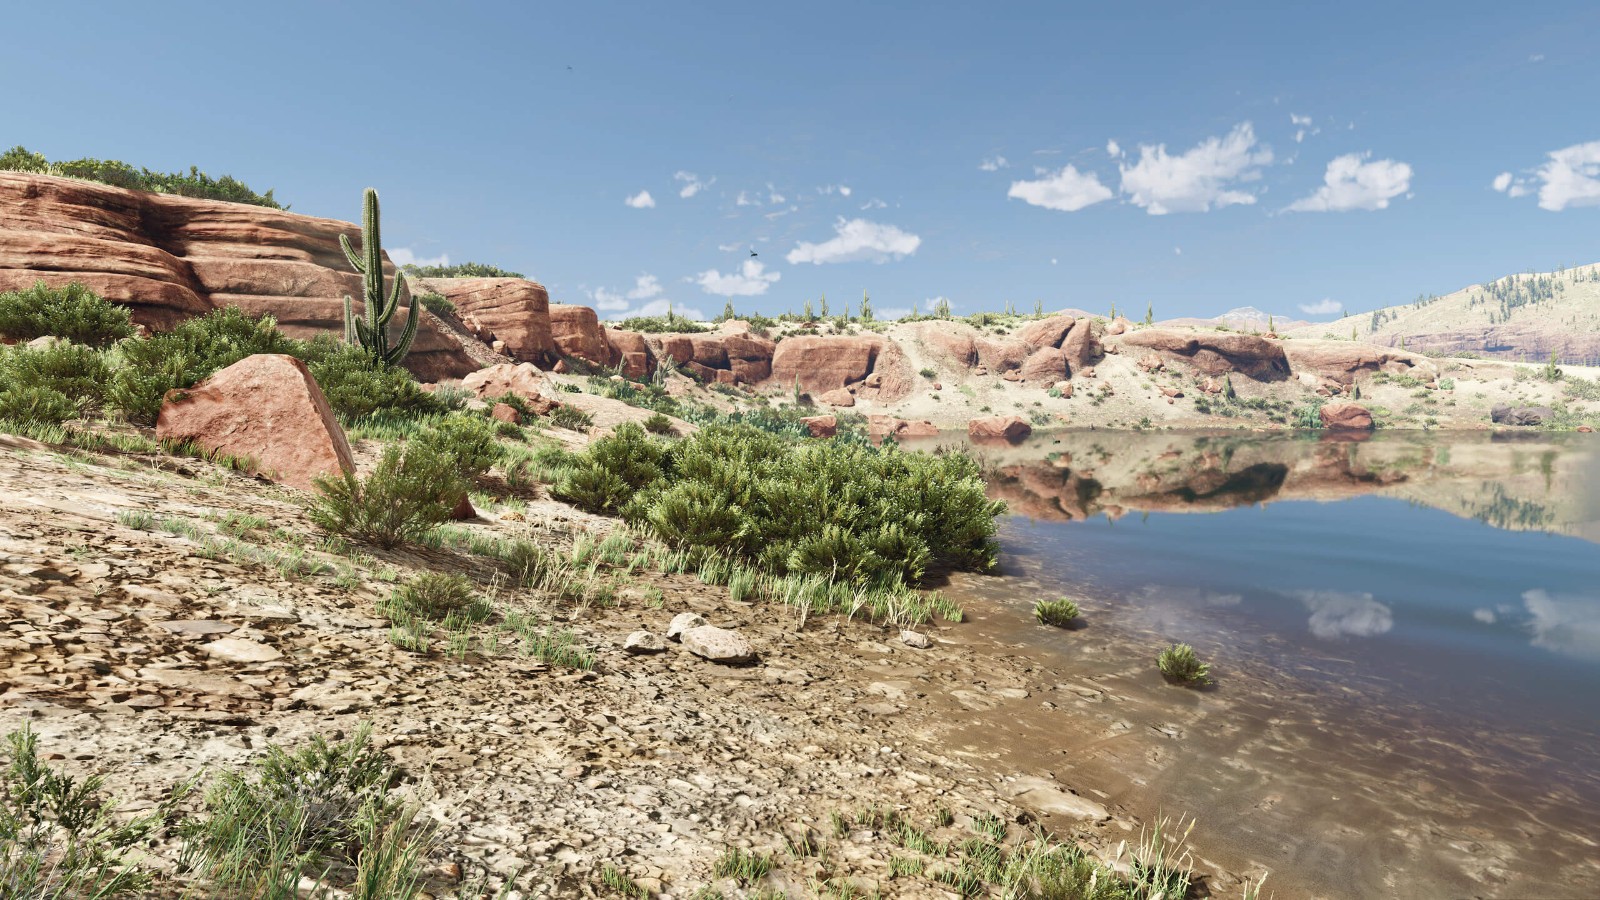 《荒野大镖客2》高清材质包 让地面和岩石更真实